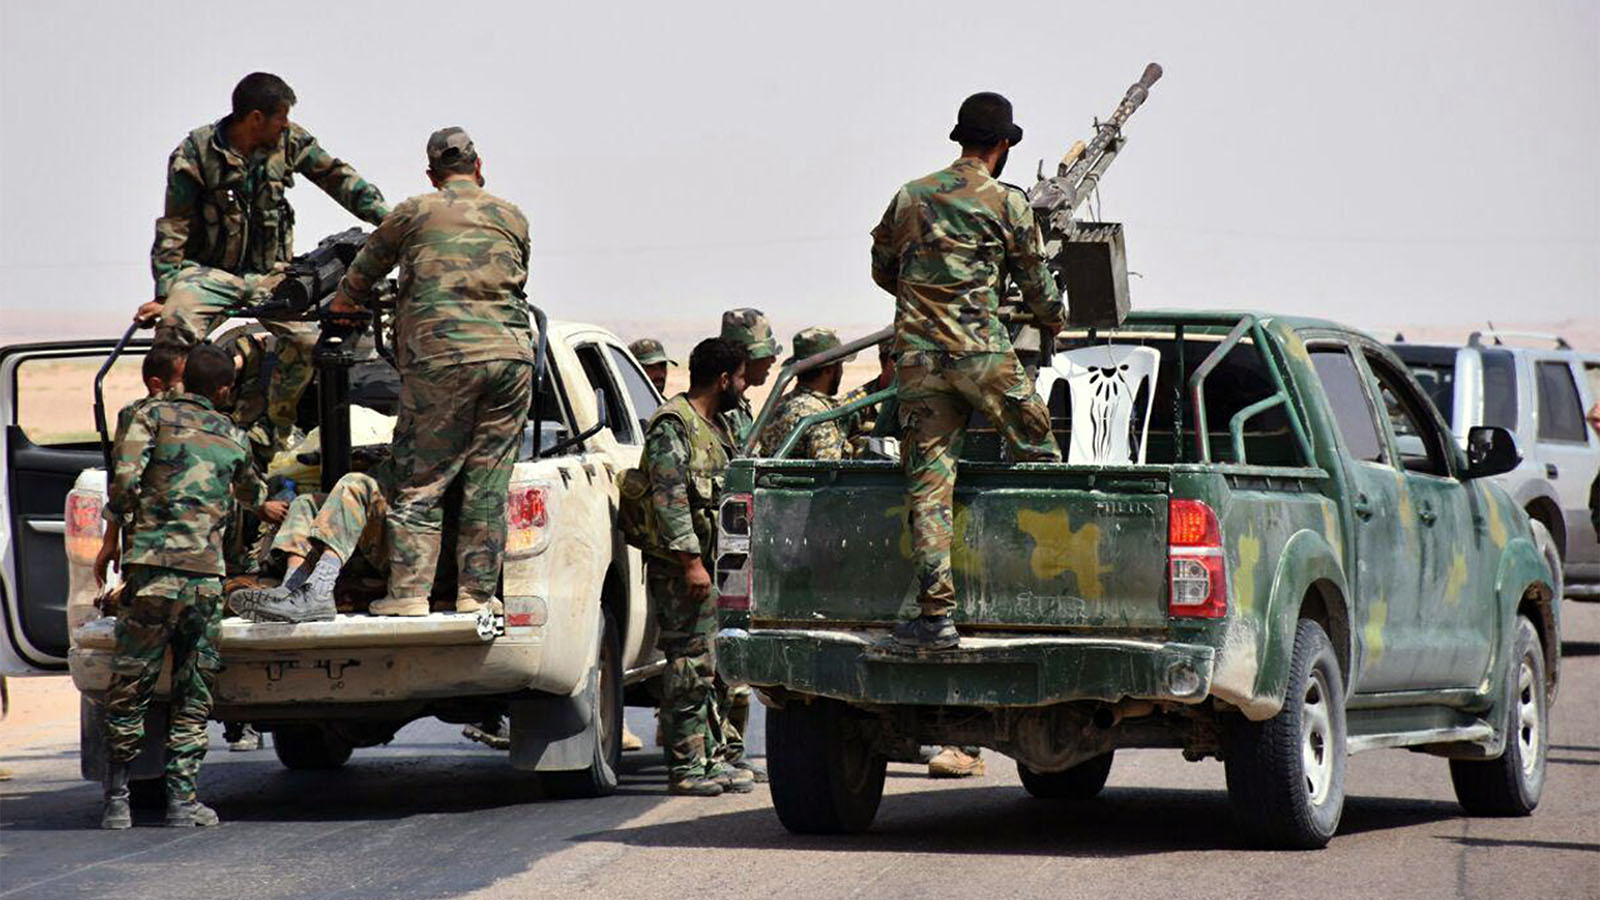 כוחות סורים נאמני אסד בפאתי העיר דיר א זור. 4 בספטמבר (צילום: SANA via AP)